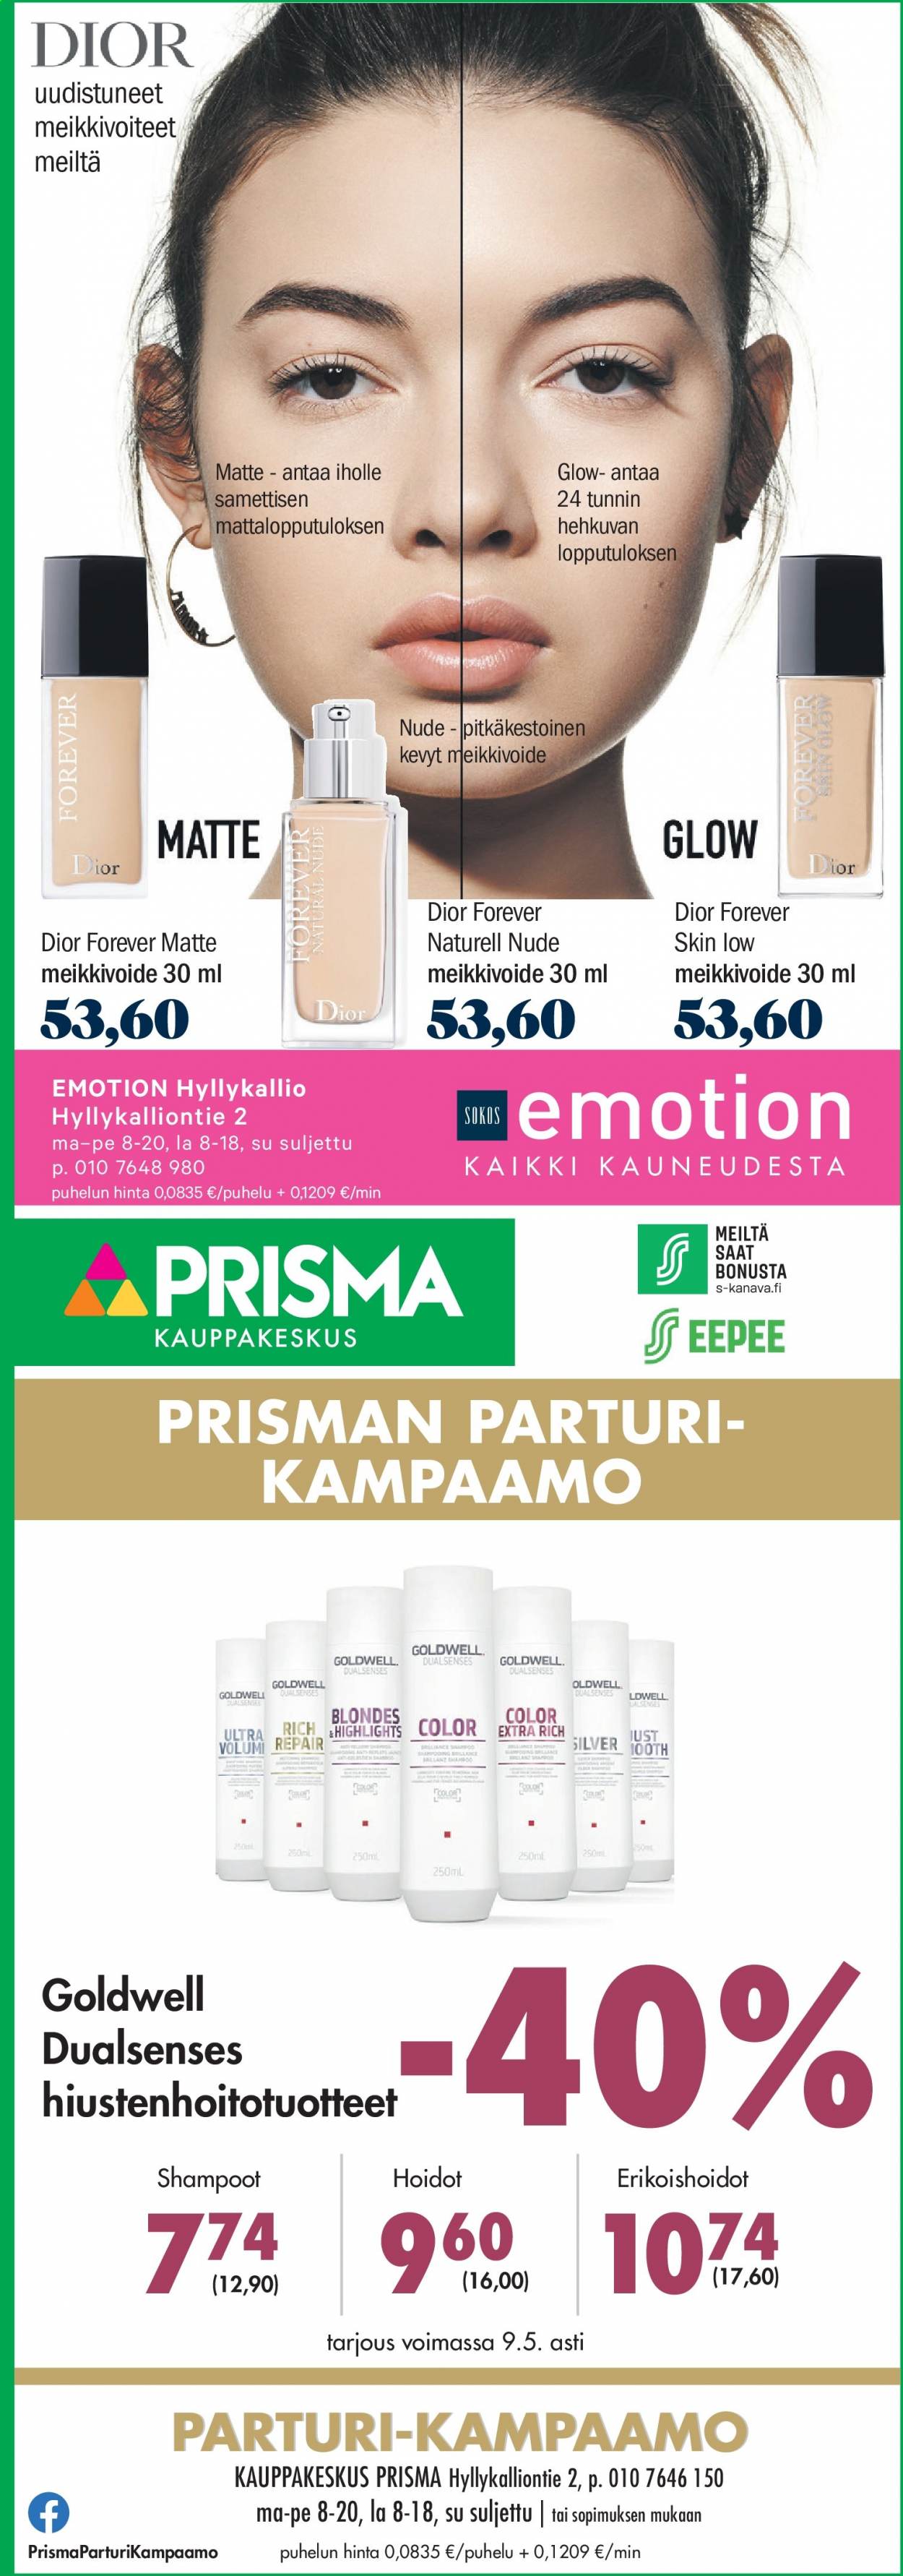 thumbnail - Prisma tarjoukset  - 20.04.2021 - 17.05.2021 - Tarjoustuotteet - Dior, meikkivoide. Sivu 1.